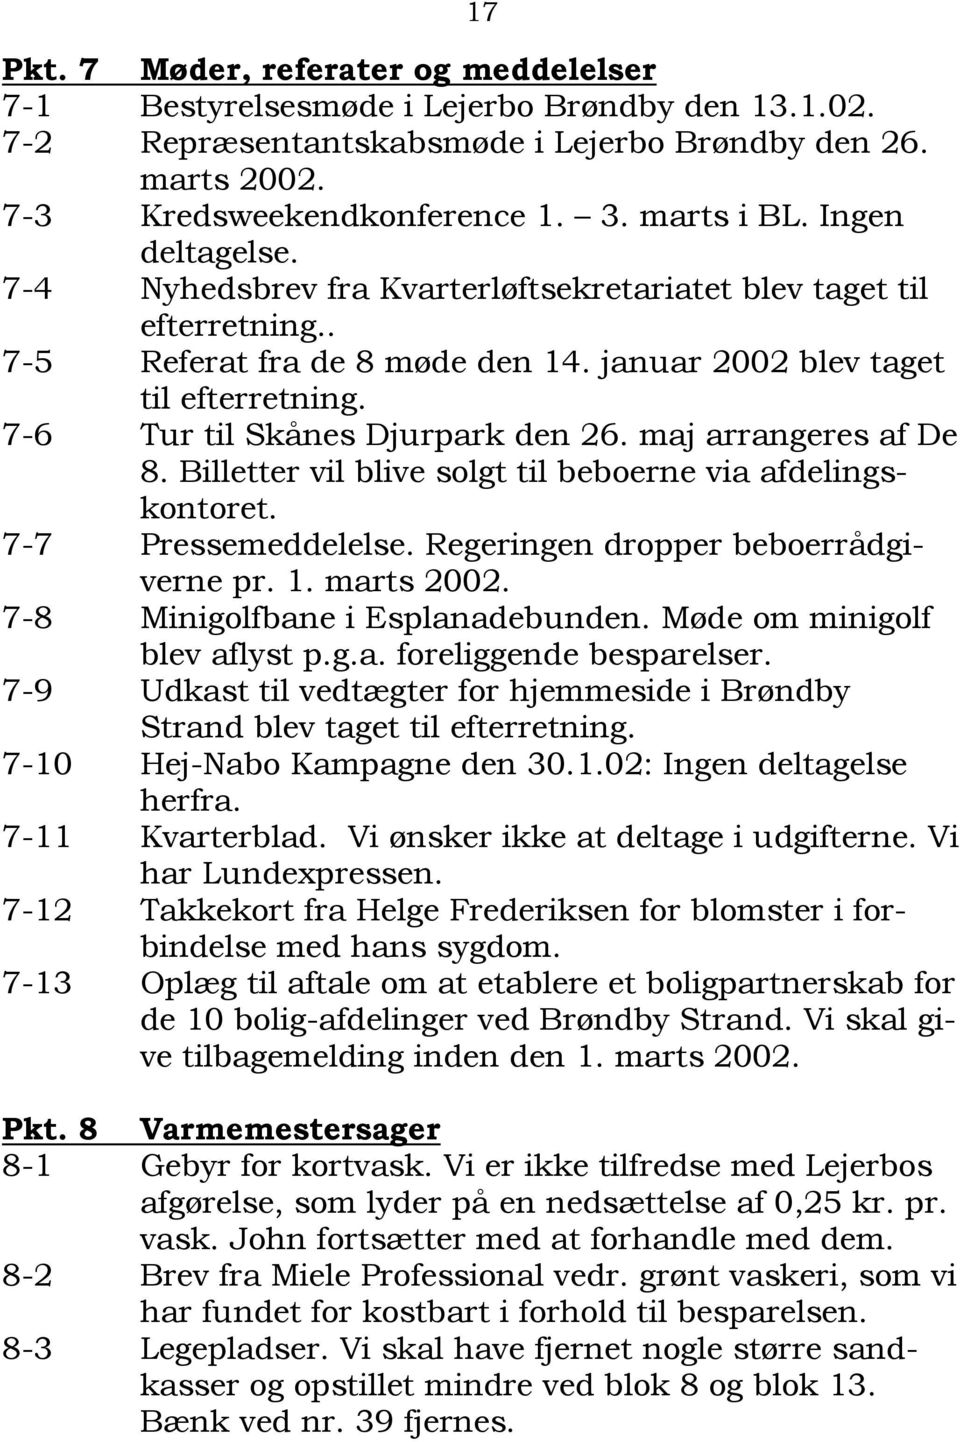 7-6 Tur til Skånes Djurpark den 26. maj arrangeres af De 8. Billetter vil blive solgt til beboerne via afdelingskontoret. 7-7 Pressemeddelelse. Regeringen dropper beboerrådgiverne pr. 1. marts 2002.